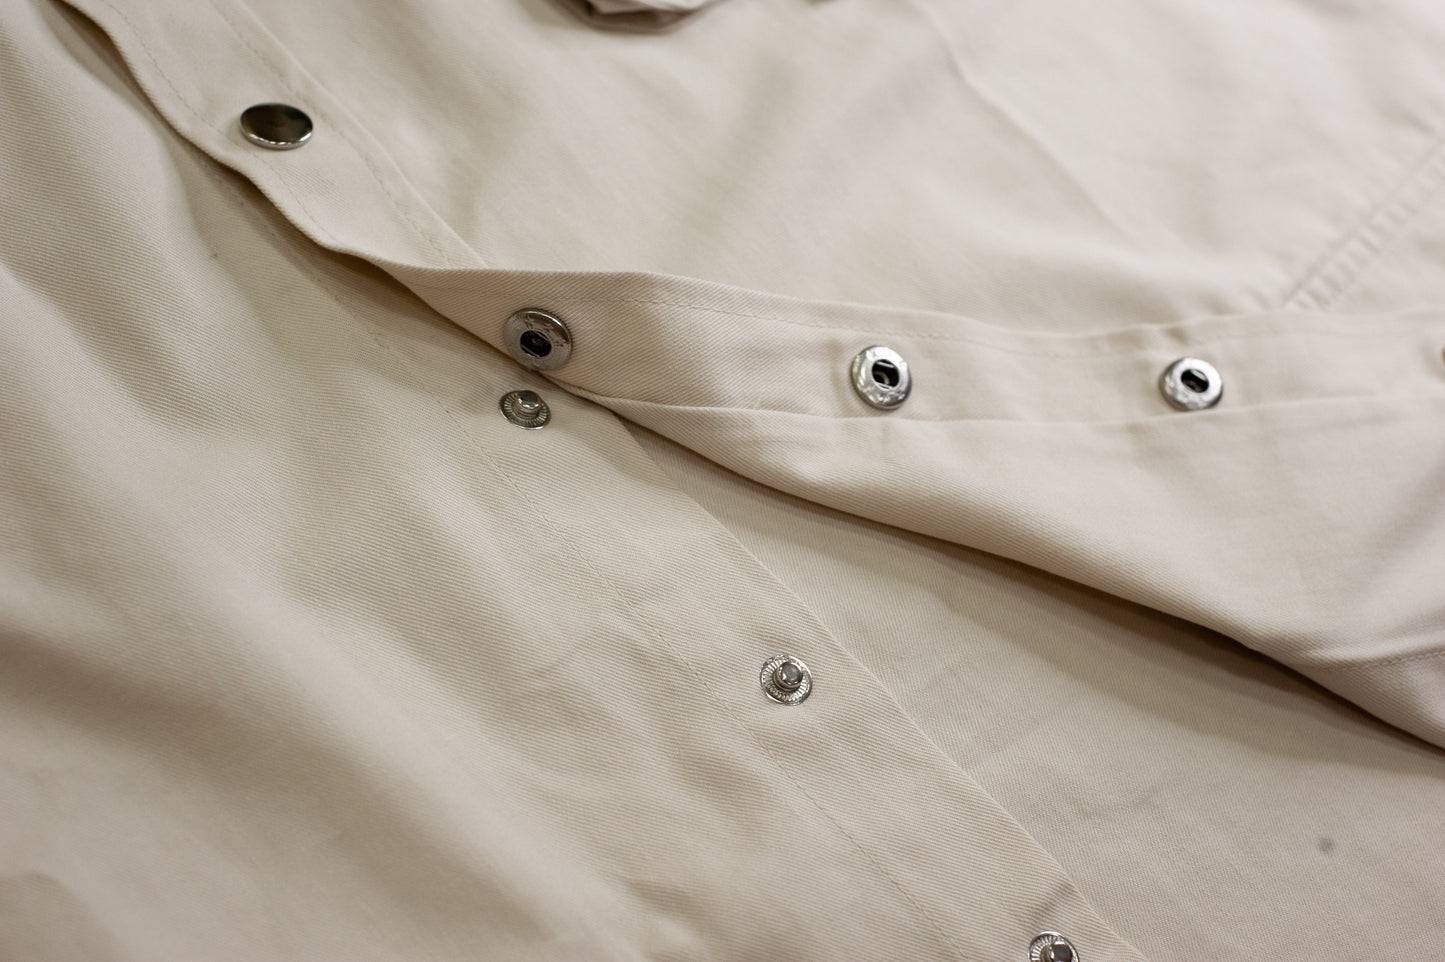 Null Label Oversized Button Shirt in Blueish Grey Denim